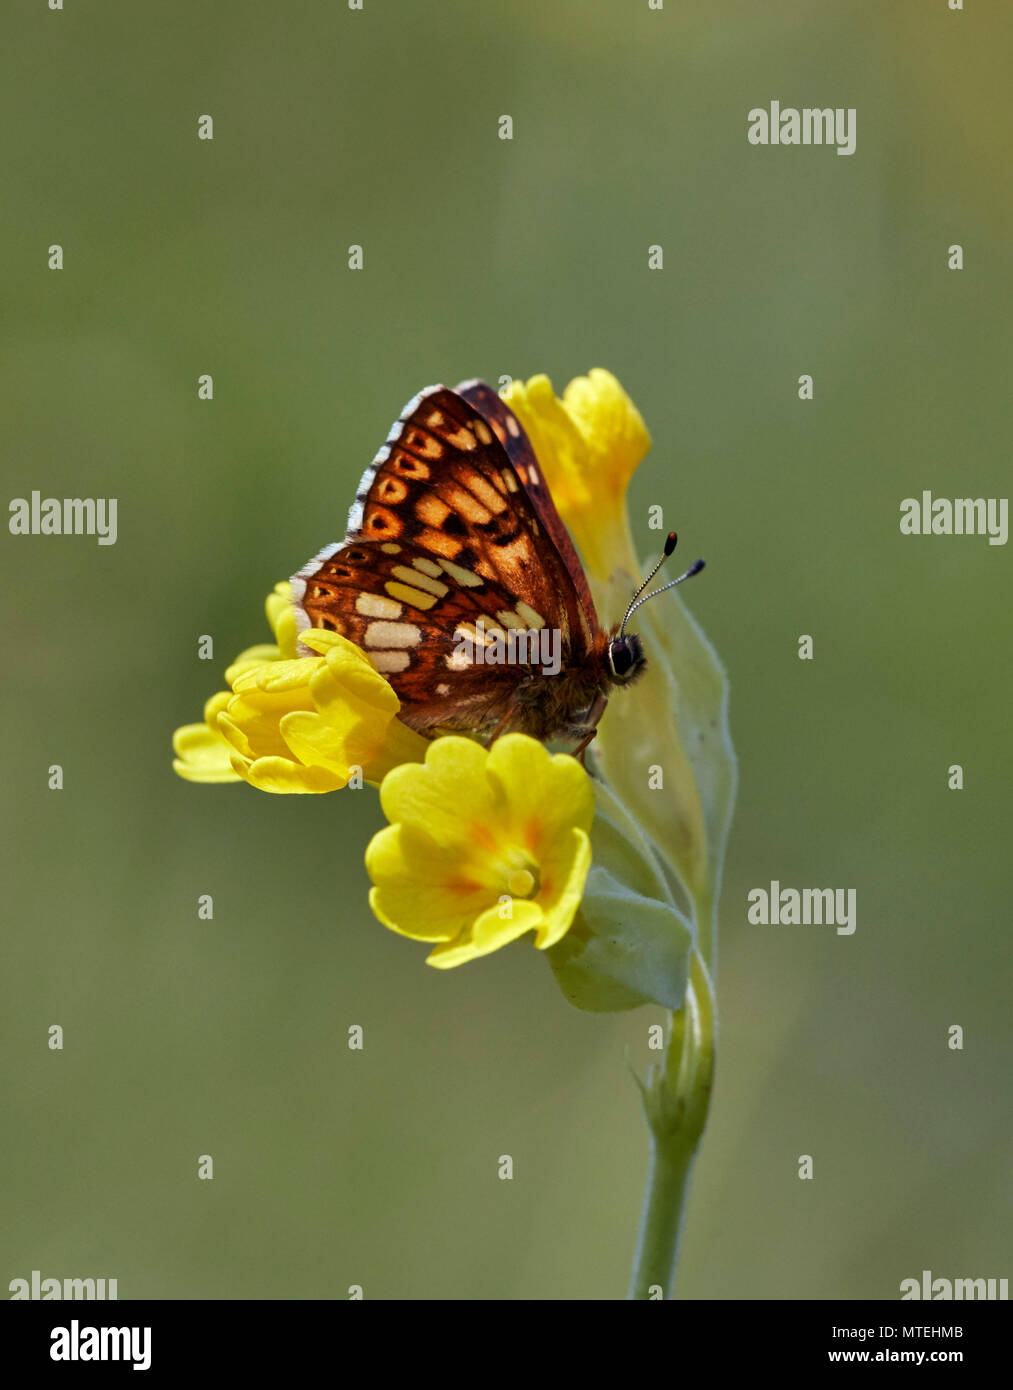 Herzog von Burgund Schmetterling auf schlüsselblumenblüten. Noar Hill Nature Reserve, Selborne, Hampshire, England. Stockfoto